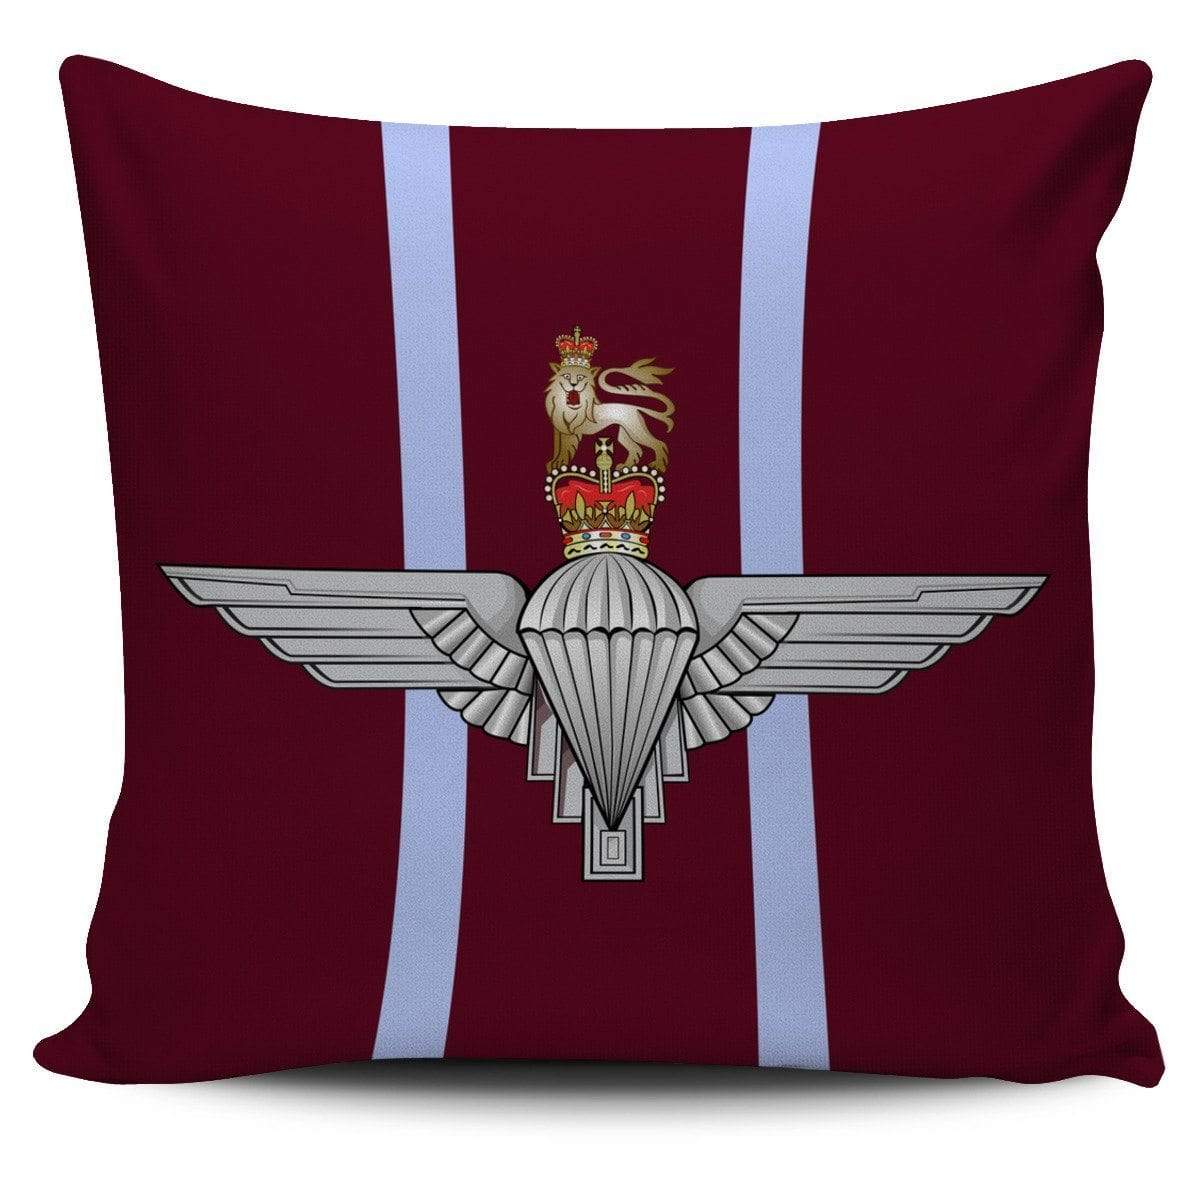 cushion cover Para Regiment Cushion Cover Parachute Regiment Cushion Cover